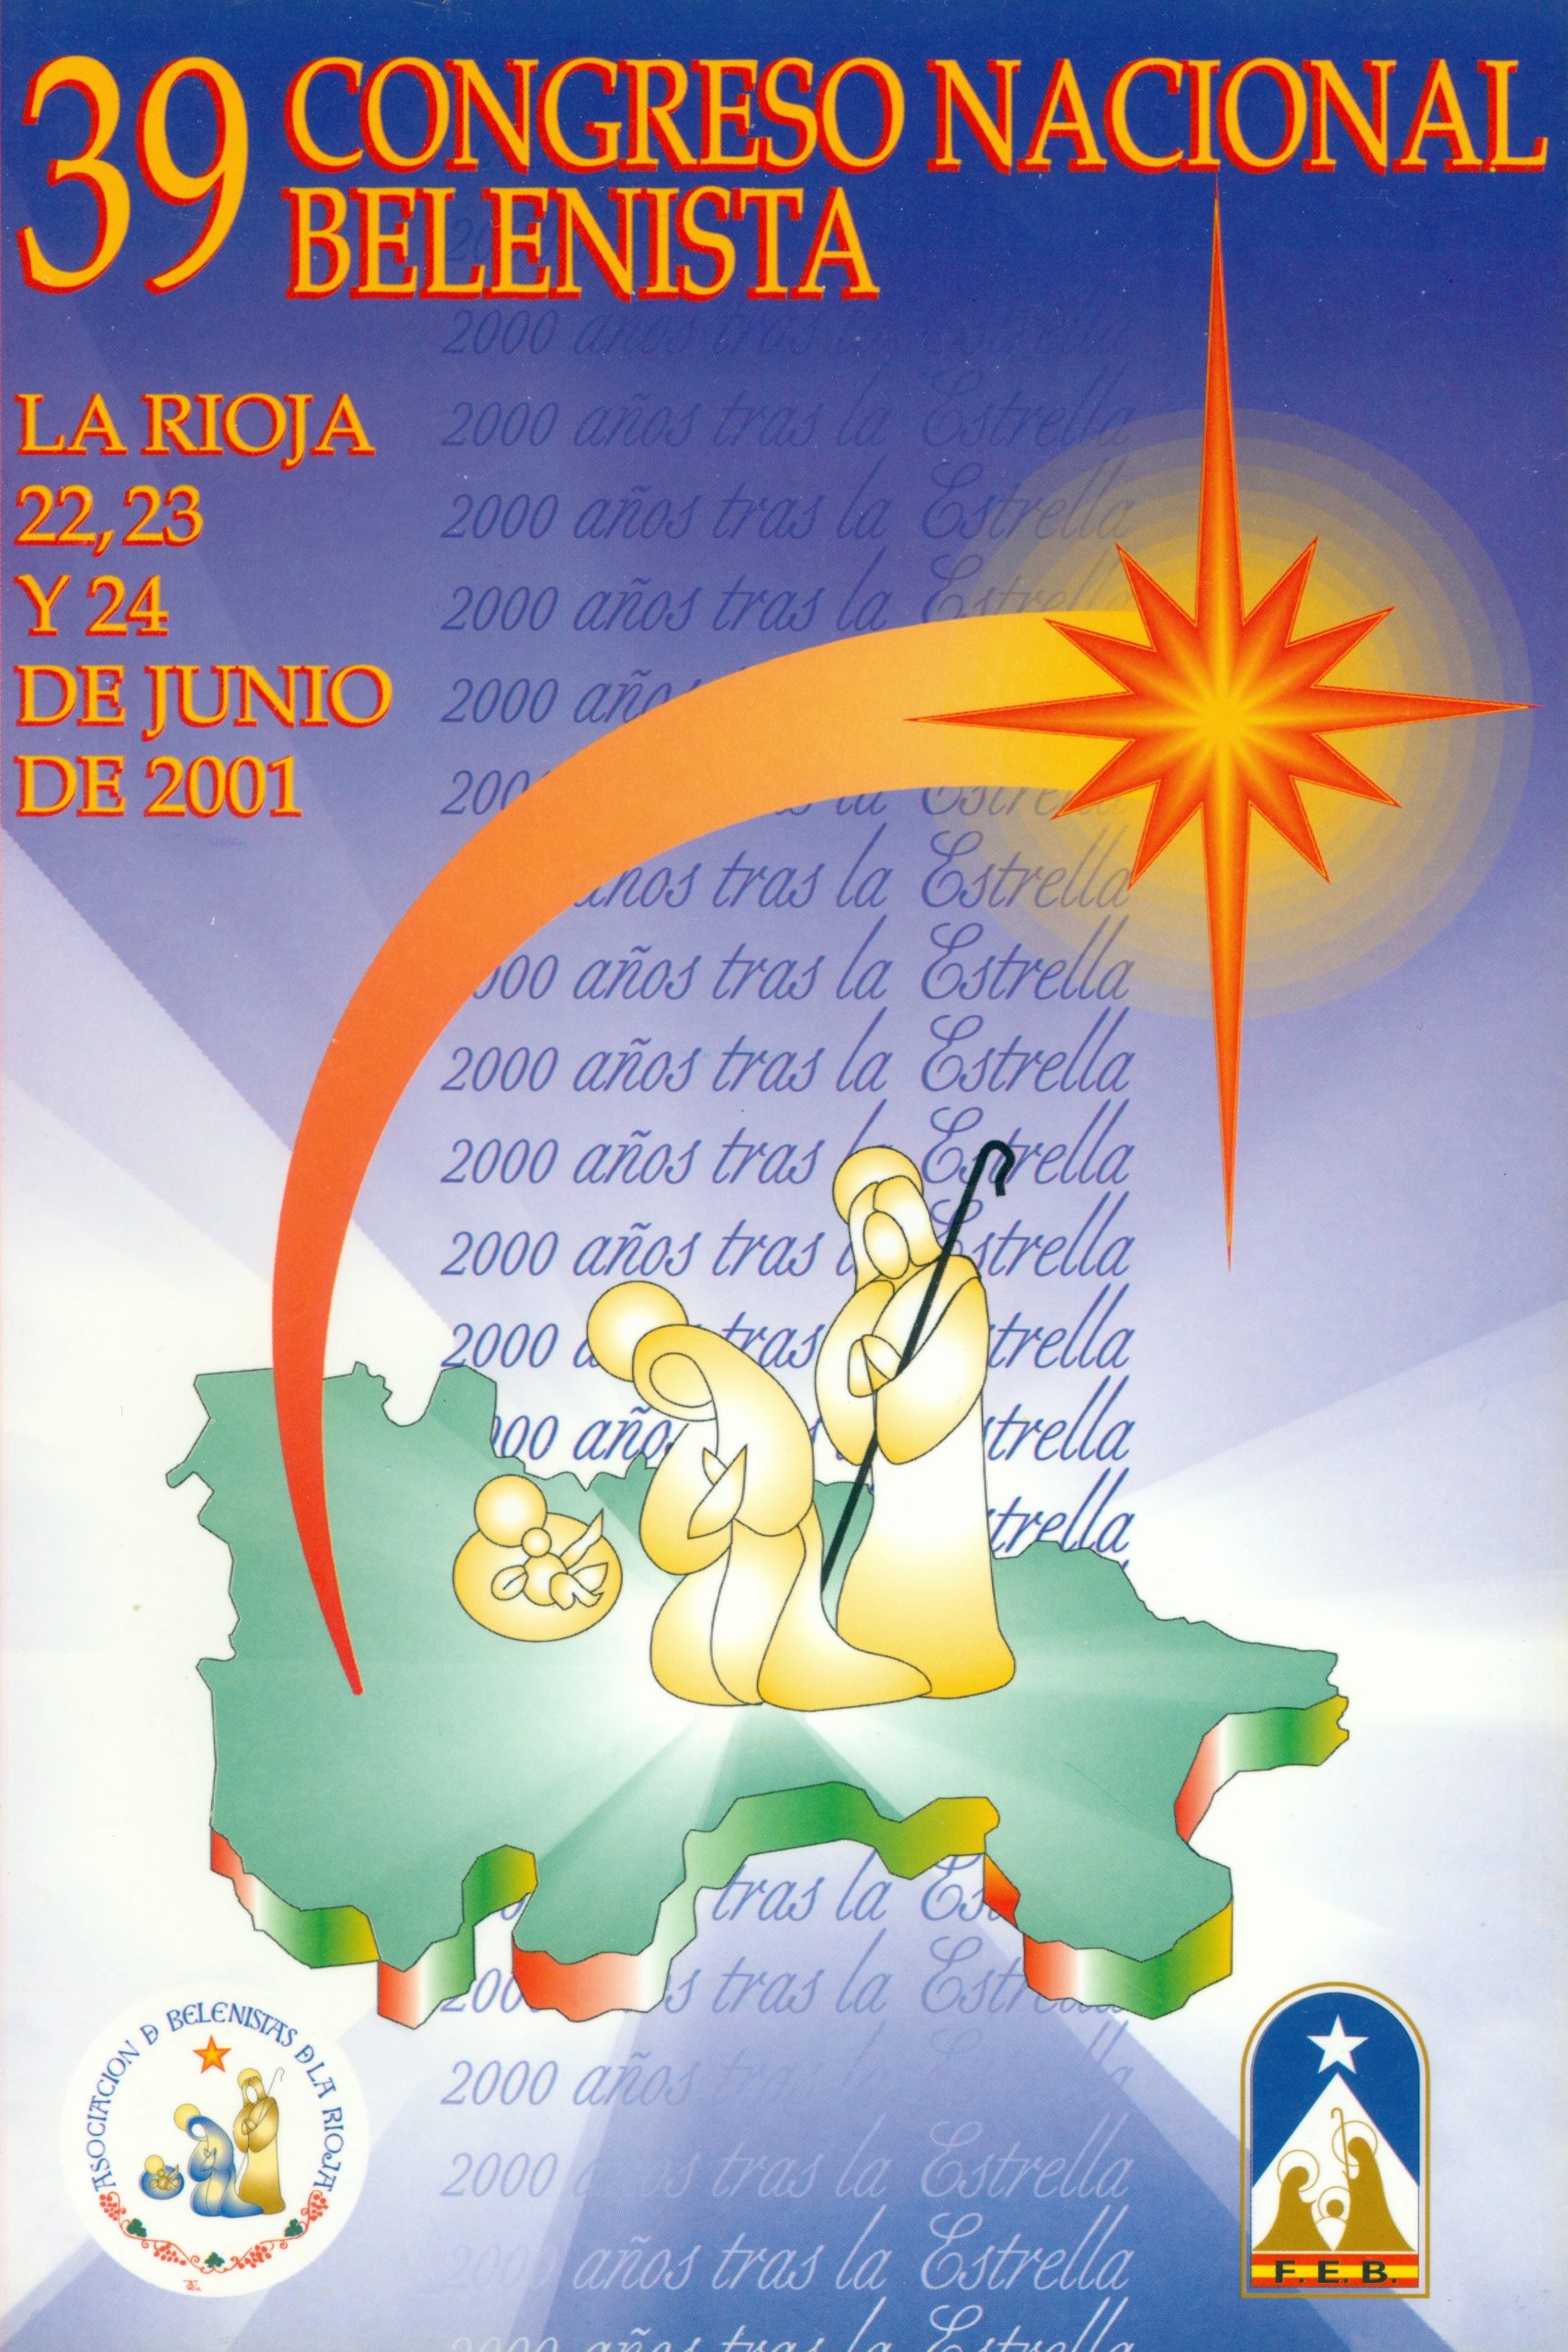 Cartel del XXXIX Congreso Nacional Belenista, organizado por la Asociación de Belenistas de La Rioja y celebrado ente el 21 y el 24 de junio de 2001